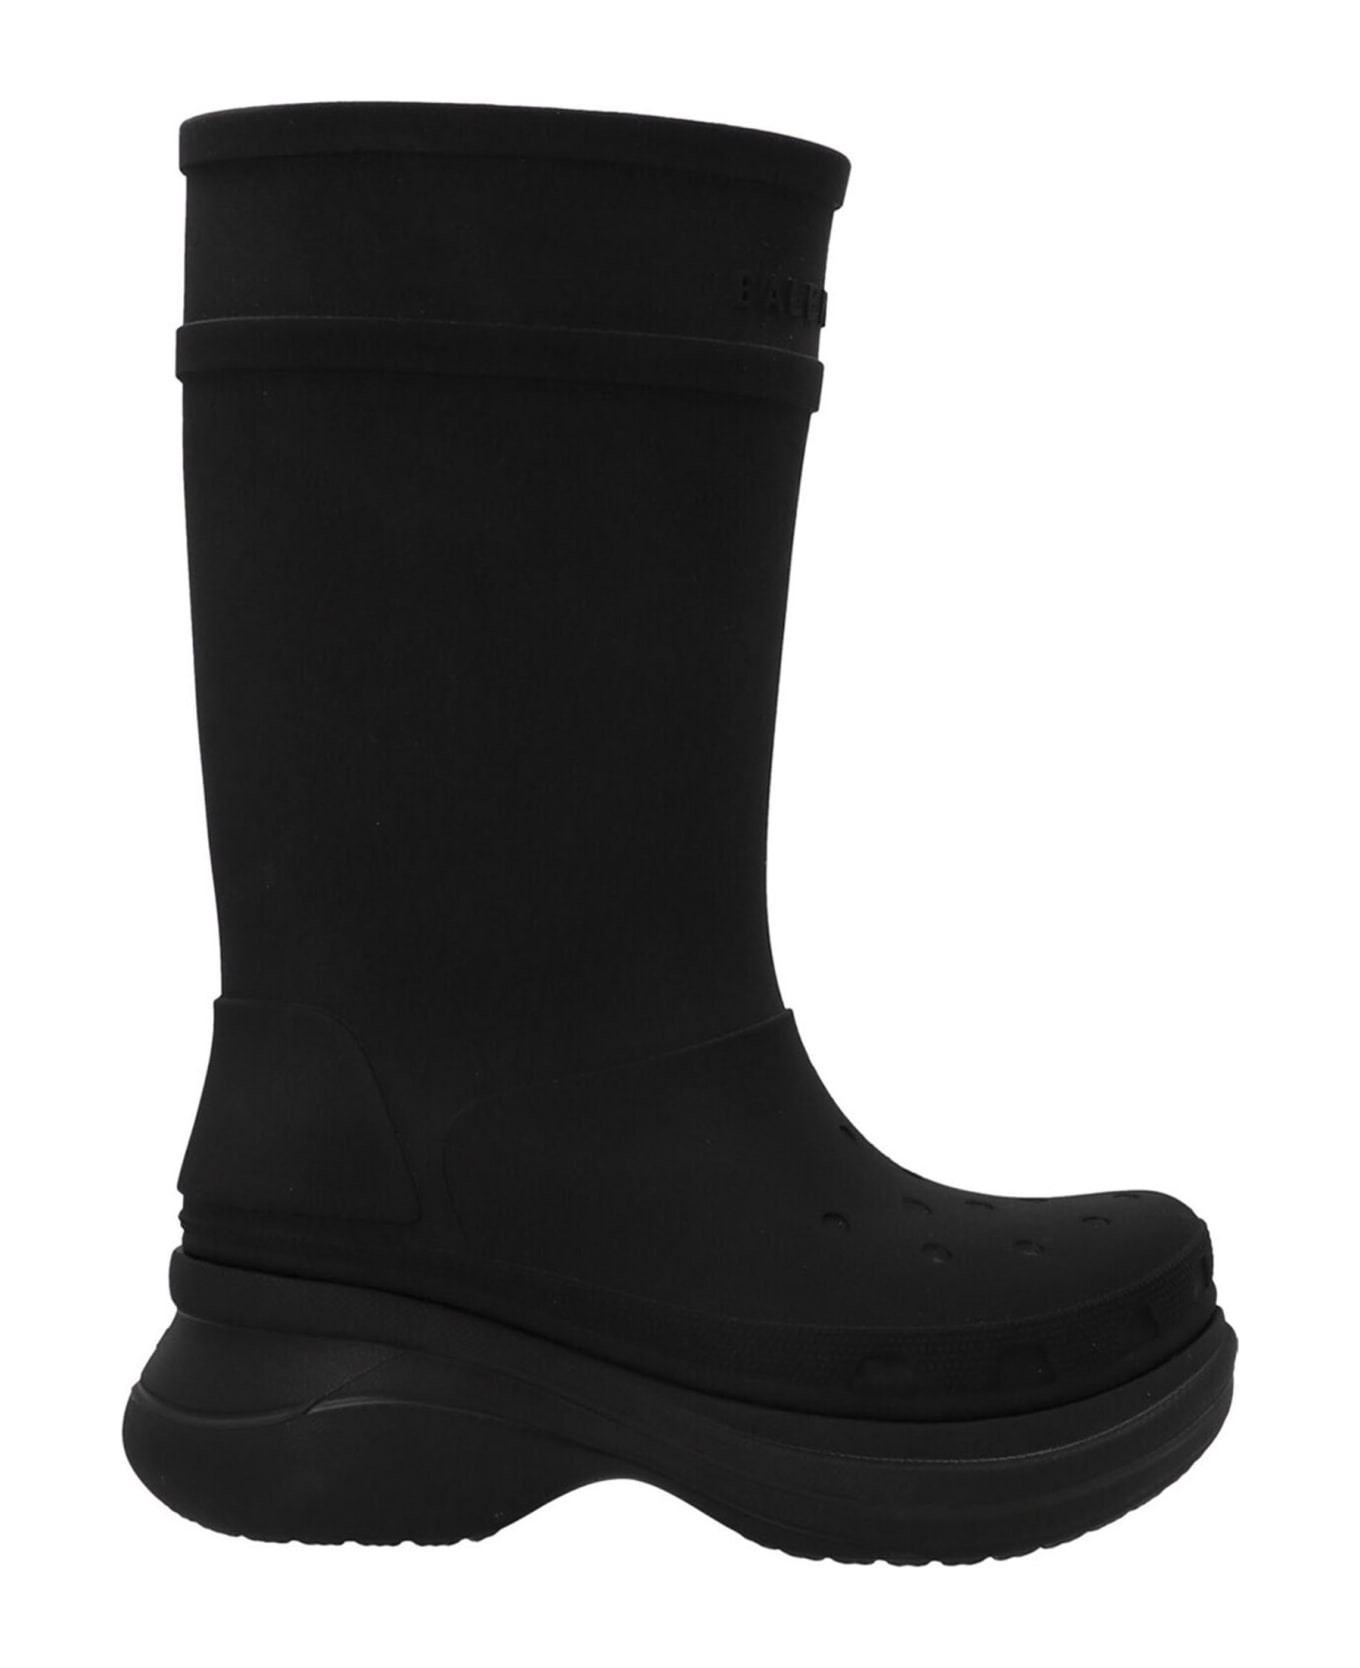 Balenciaga Crocs Boots - Black ブーツ